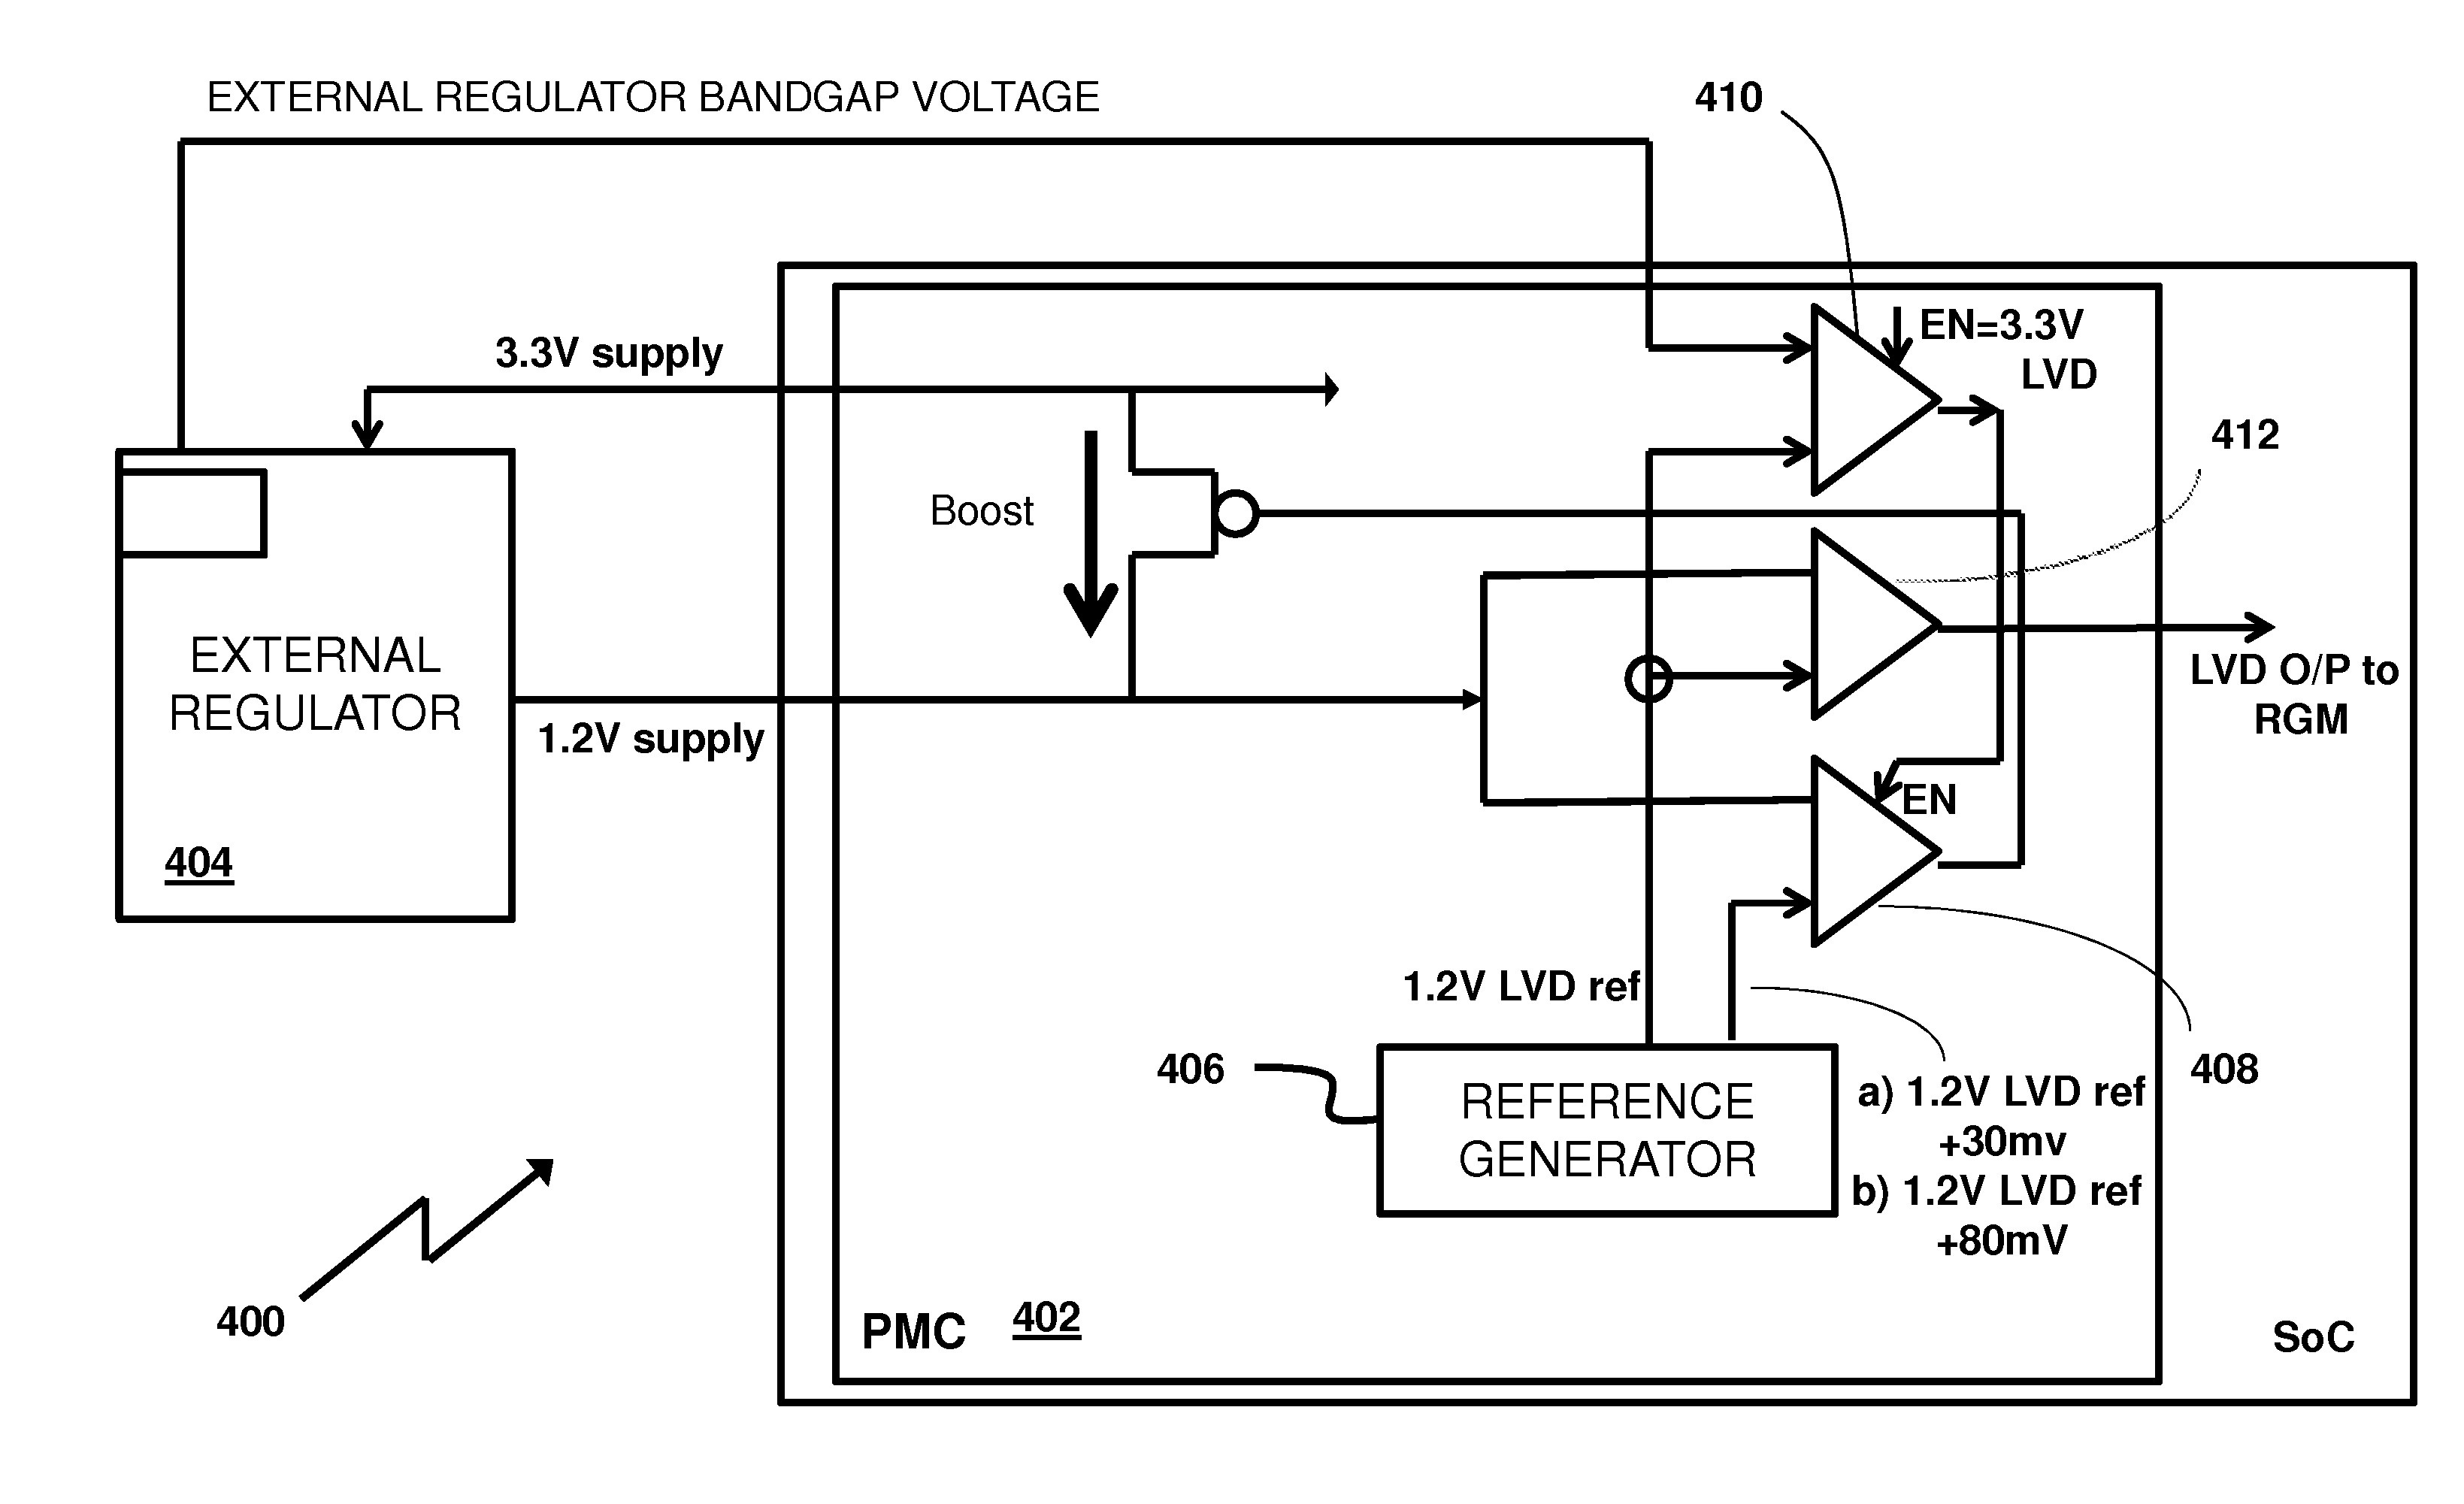 Voltage regulation subsystem